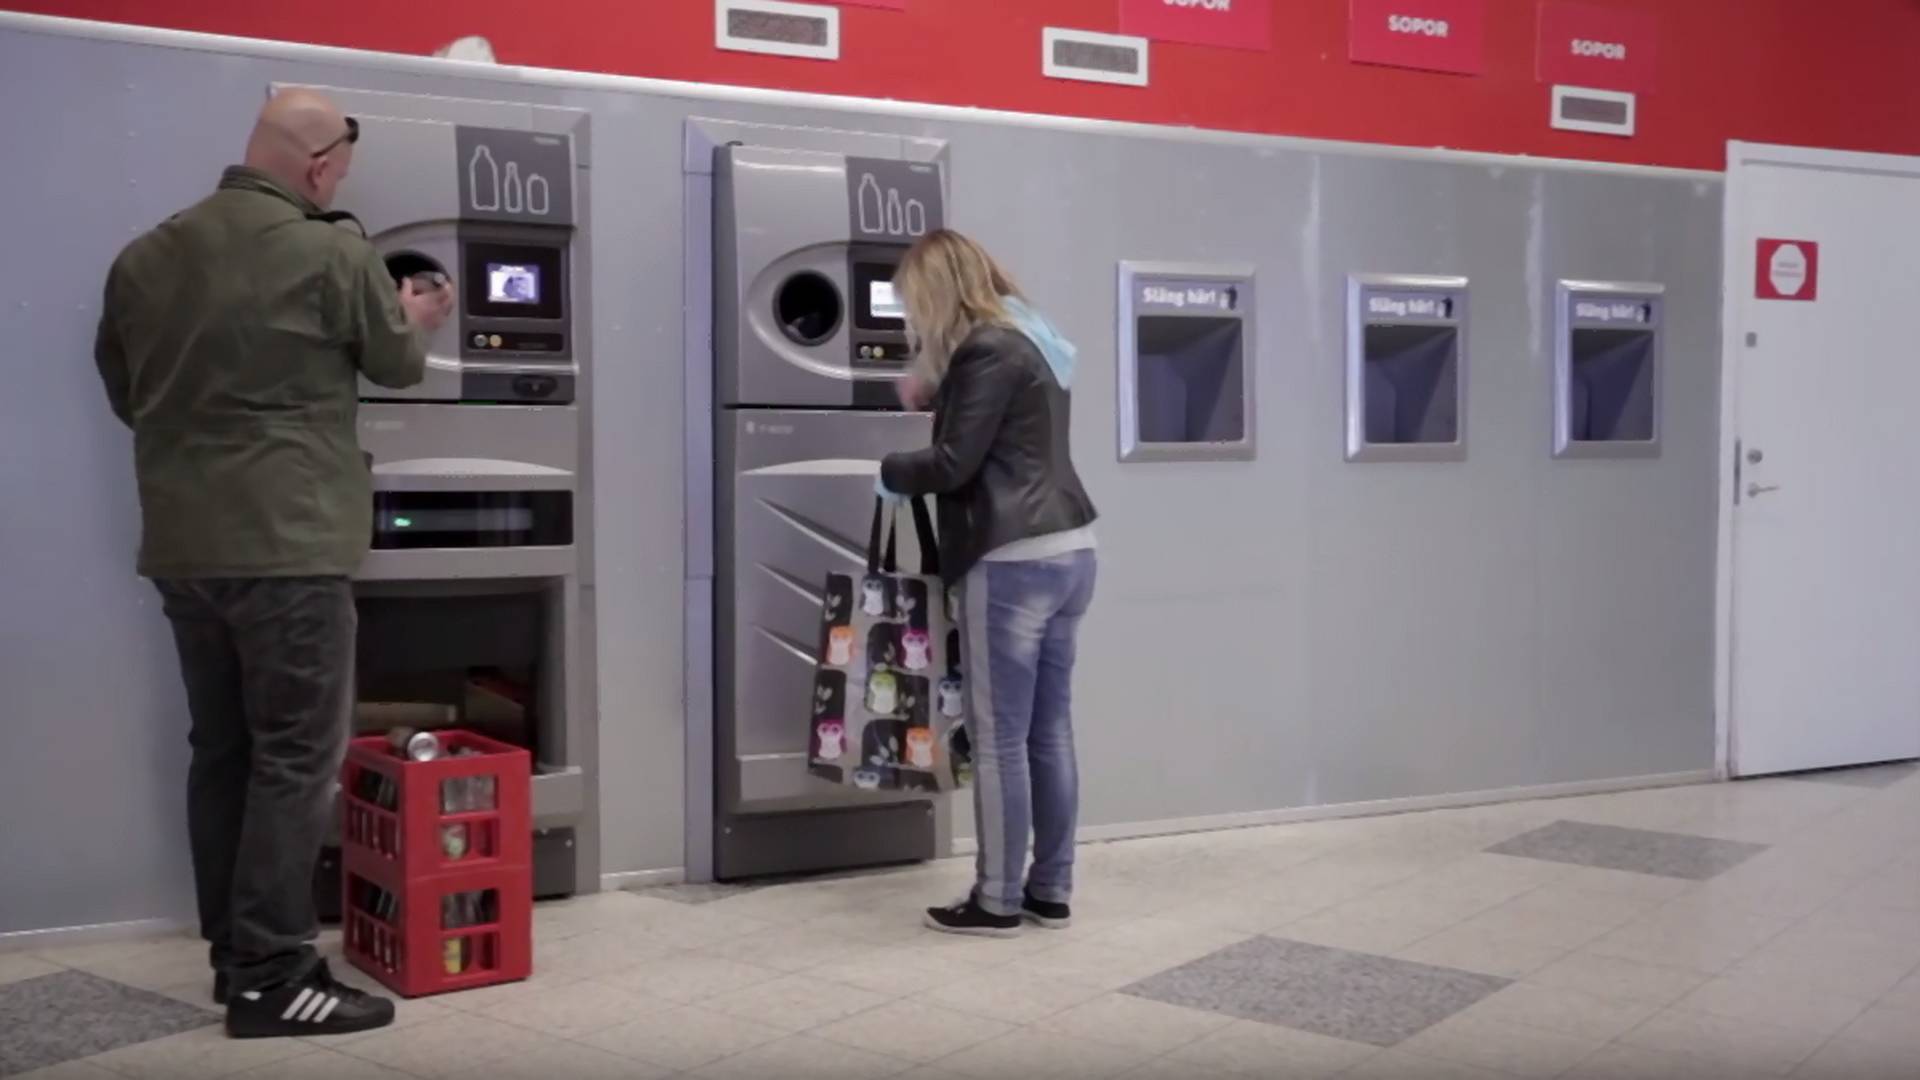 Automaty, które za zużyte butelki wypłacają pieniądze - już niedługo w Polsce?